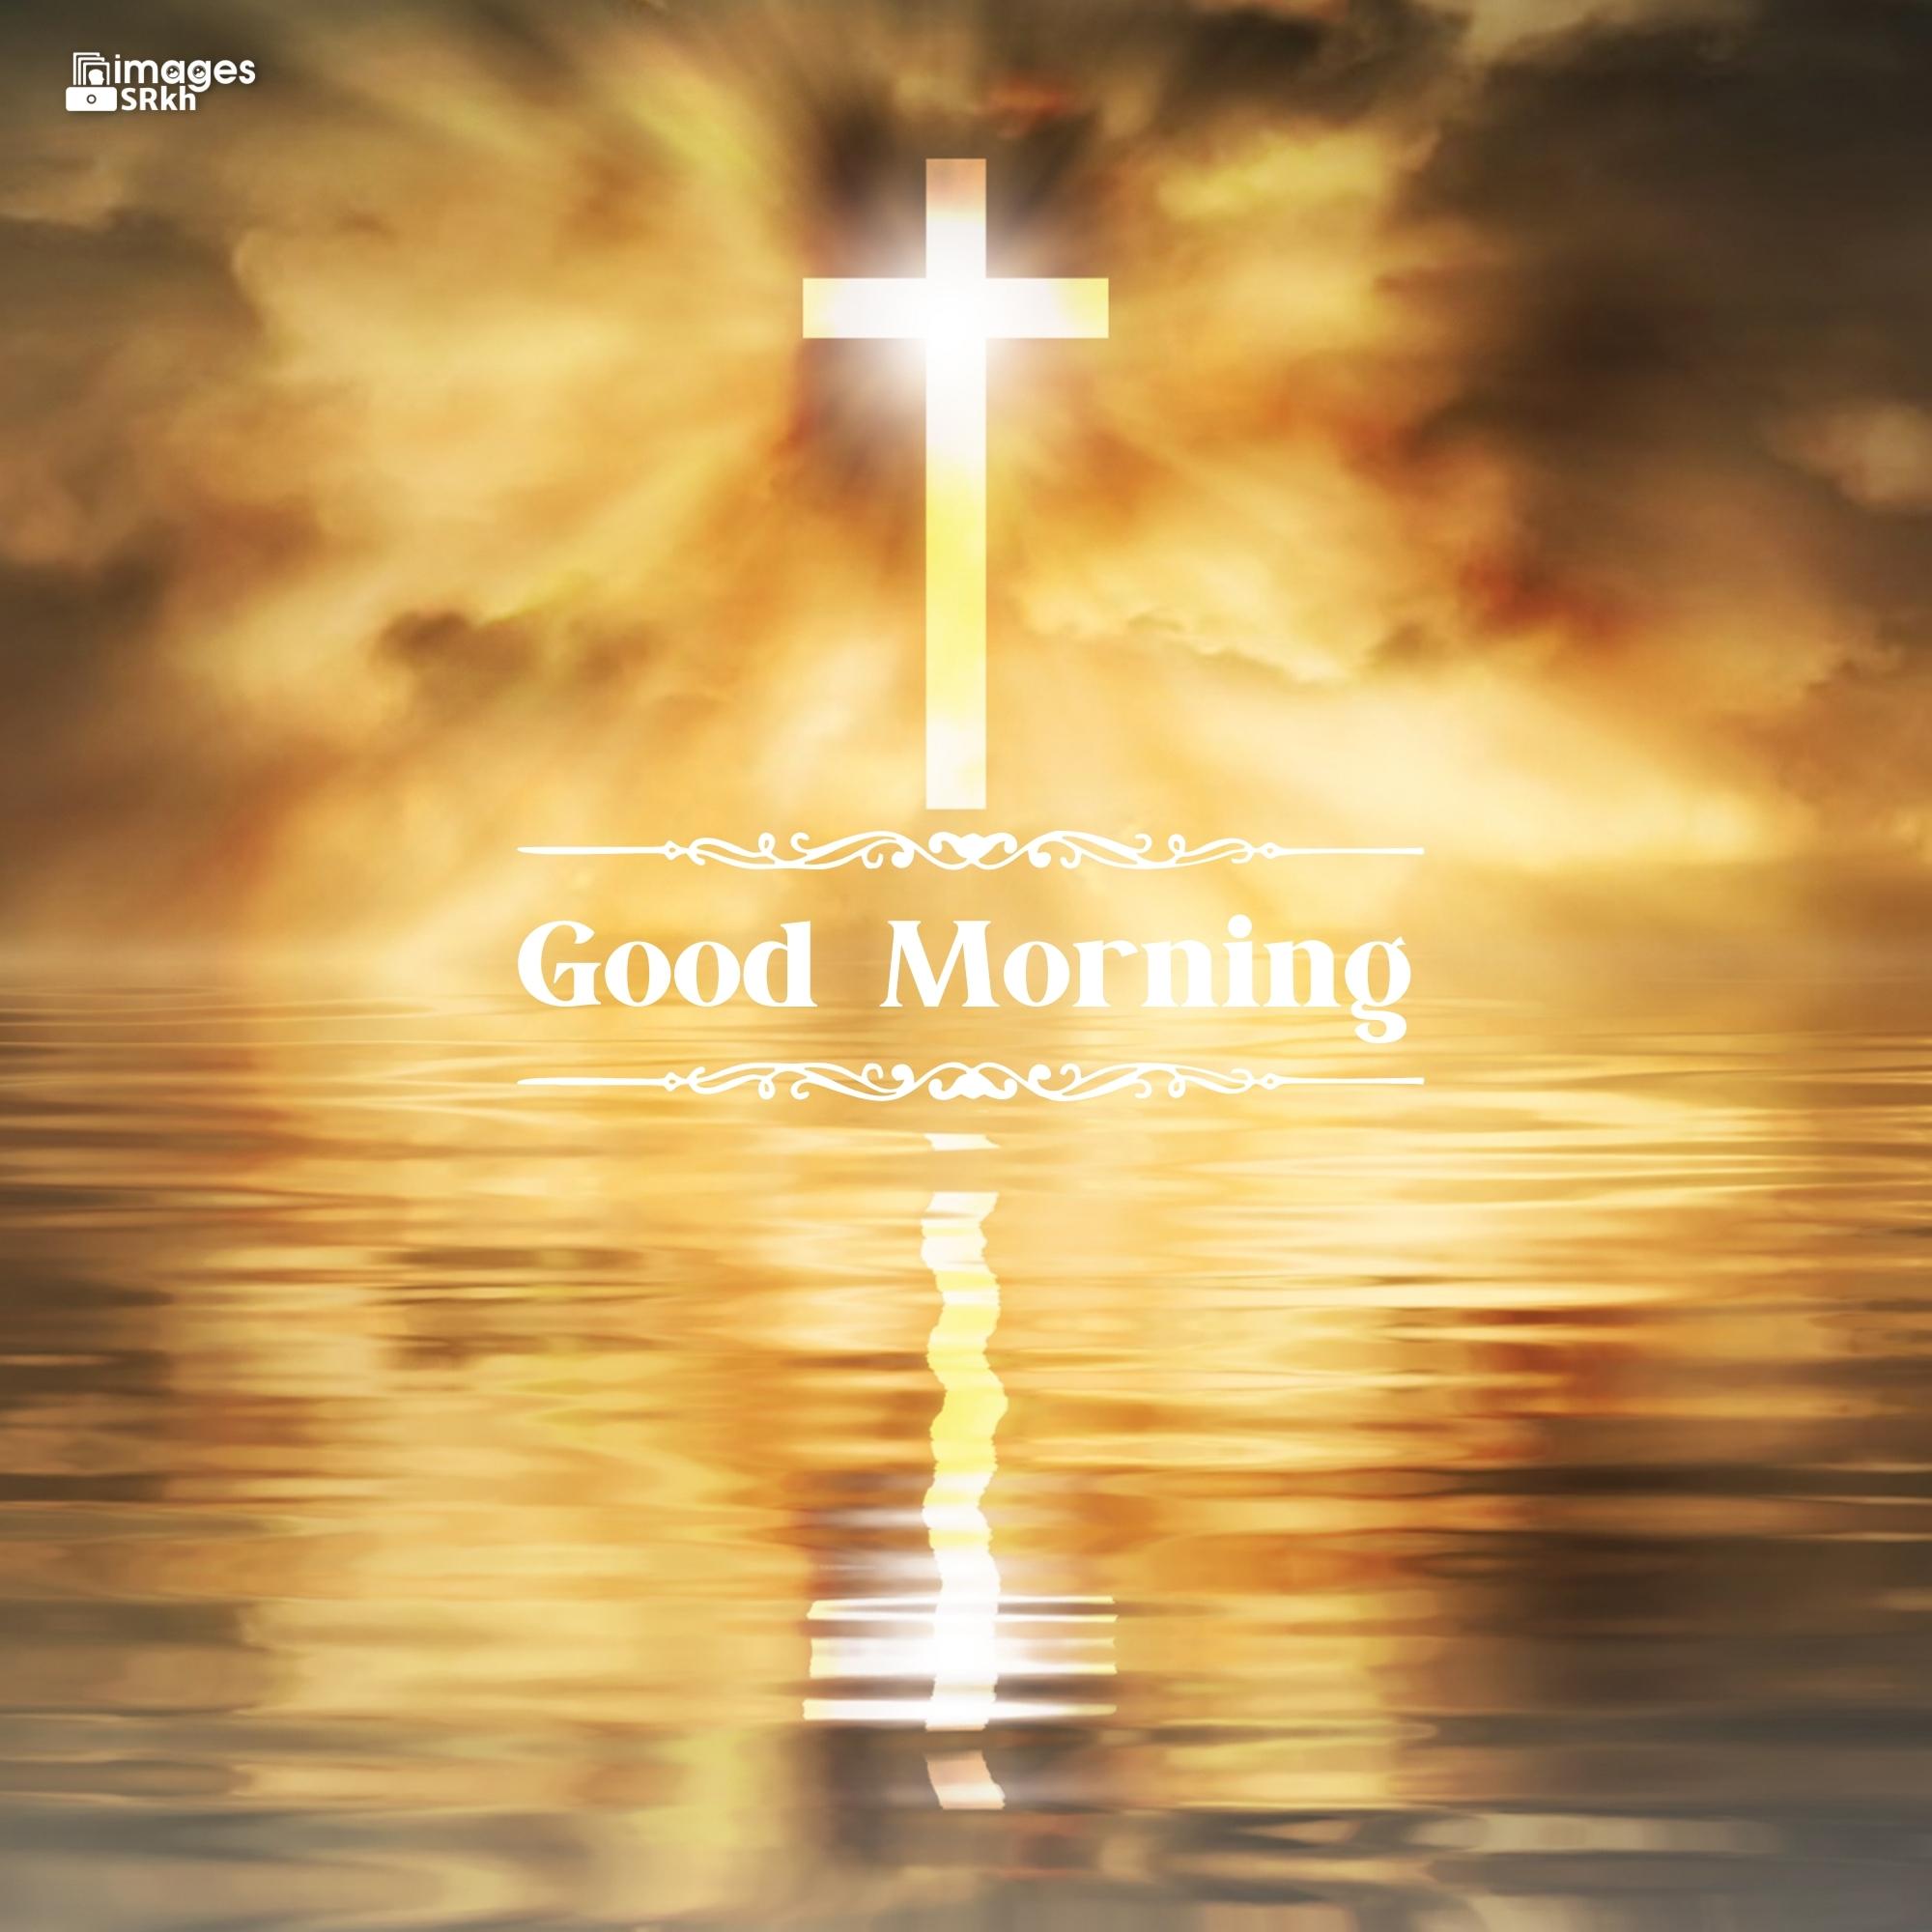 Good Morning Images For God Christian Cross hd